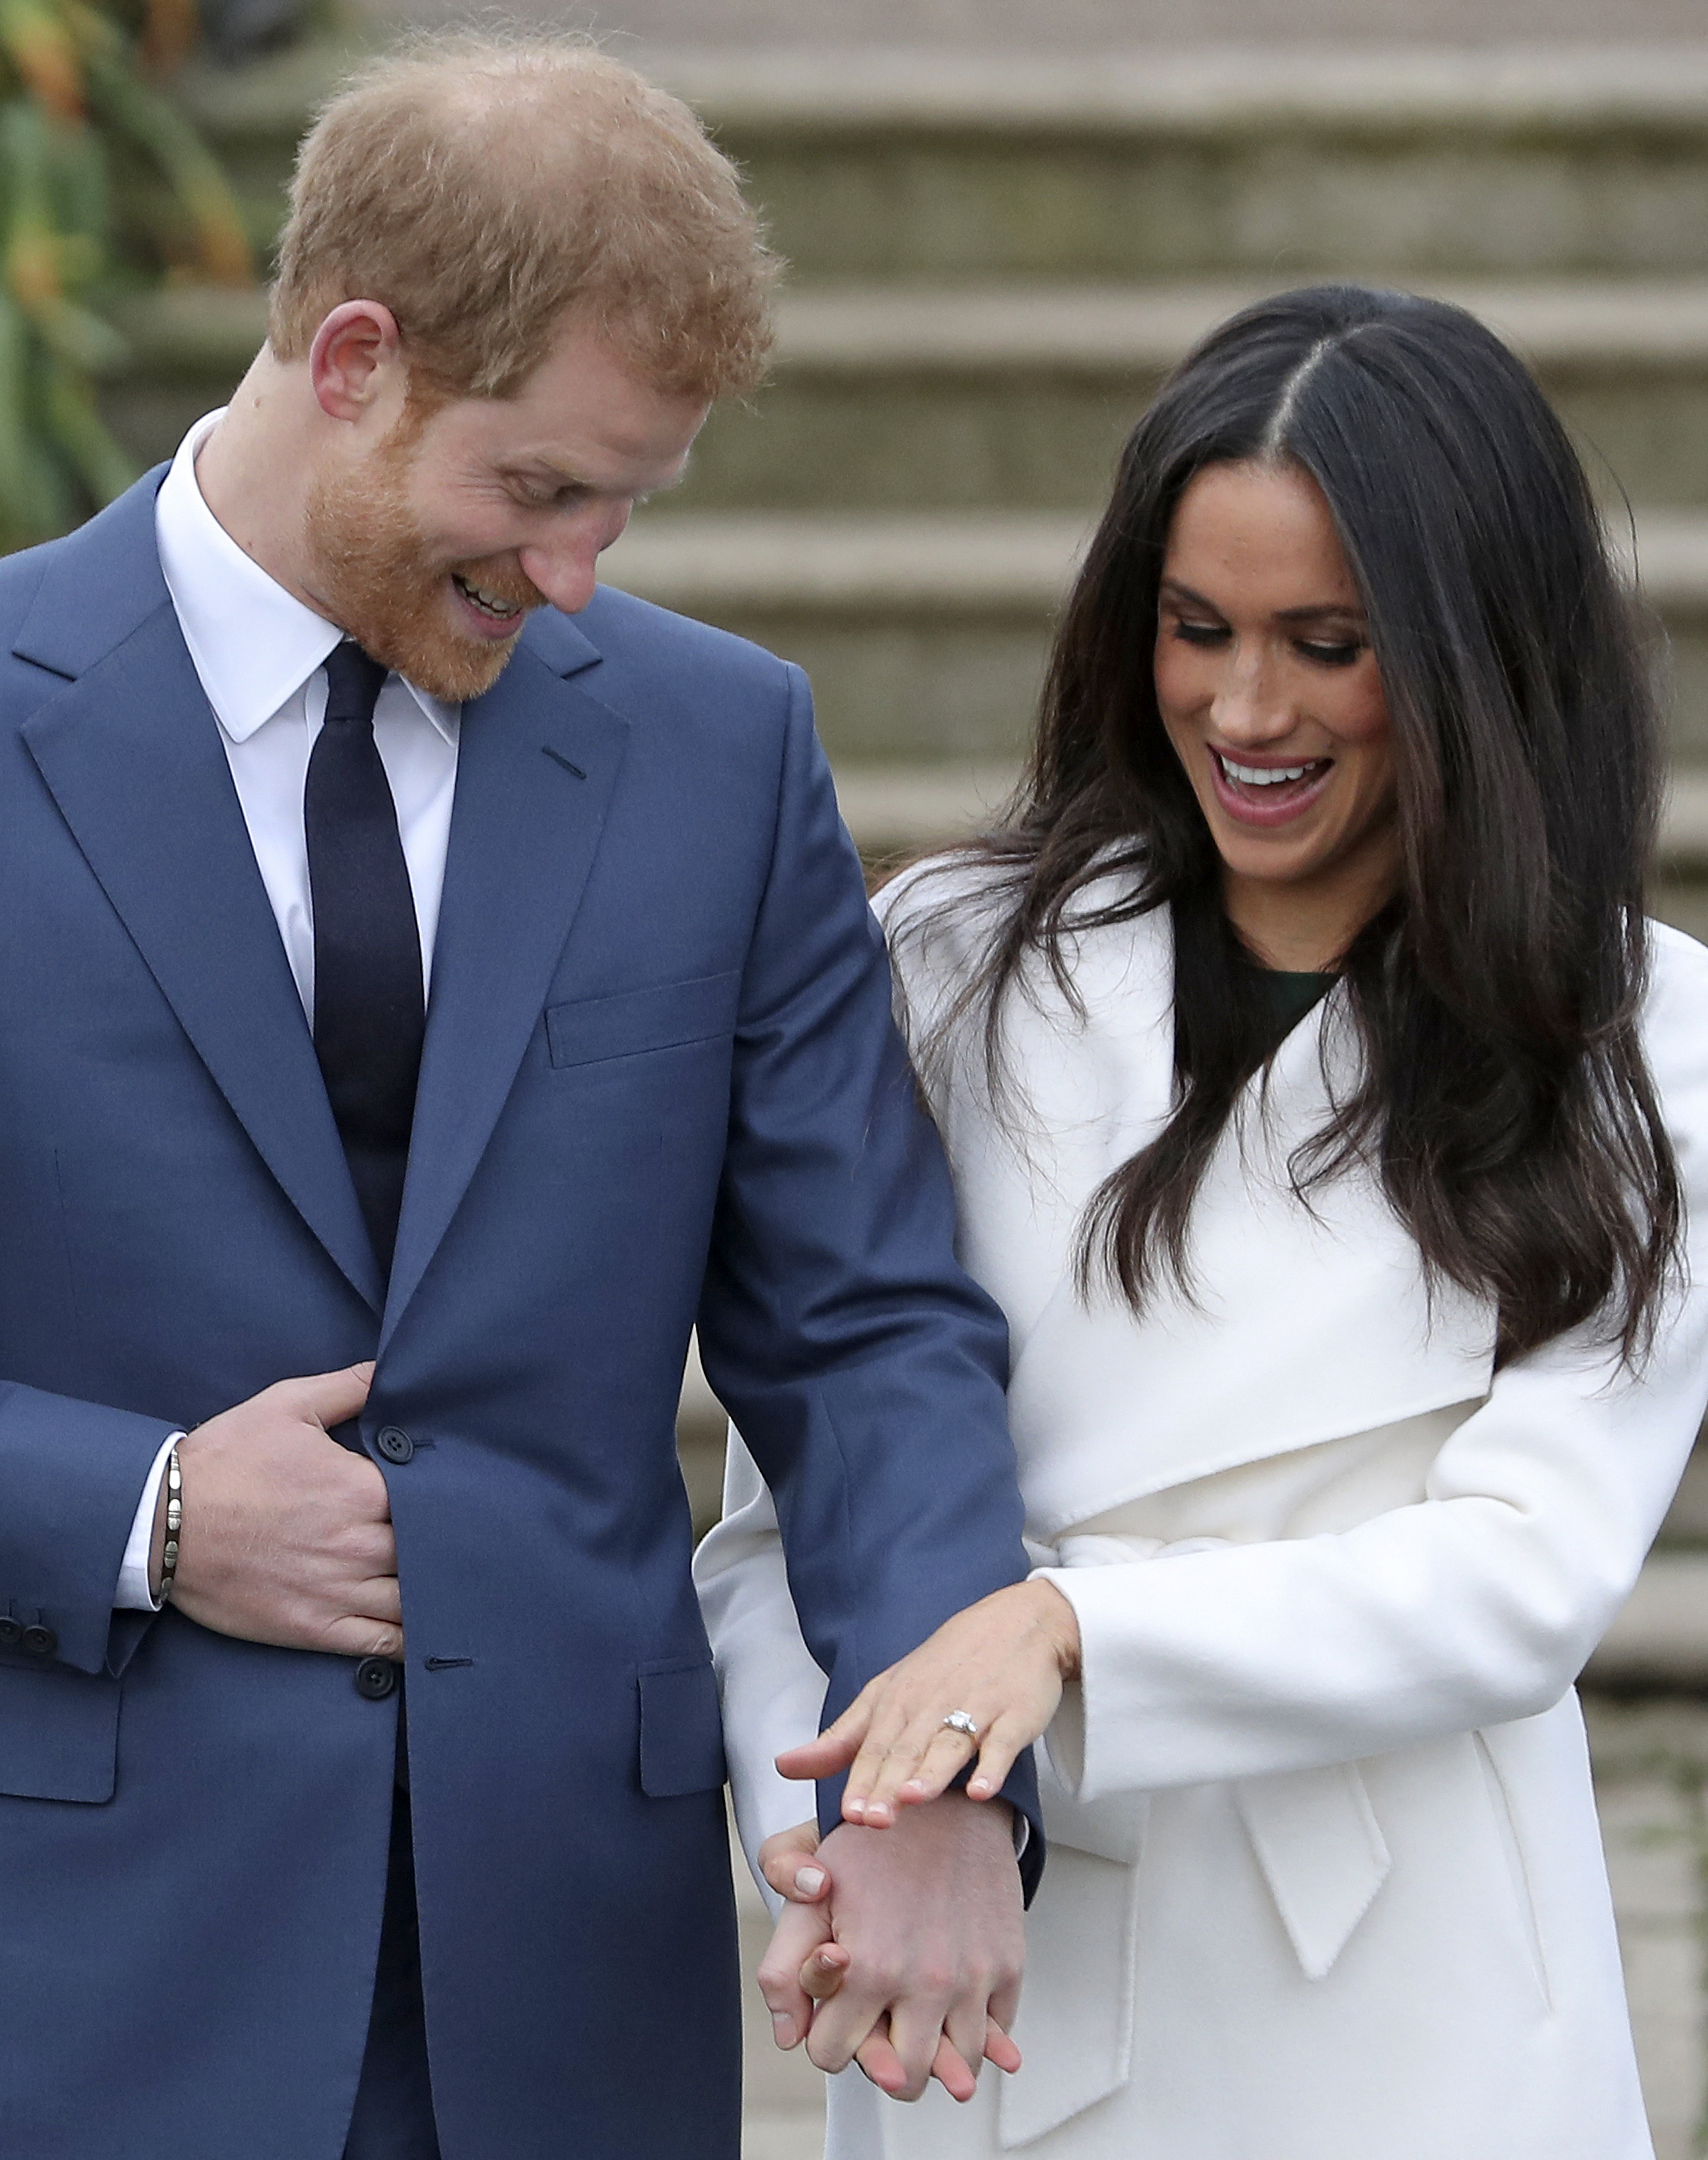 Prinz Harry und seine Verlobte Meghan Markle posieren nach der Bekanntgabe ihrer Verlobung am 27. November 2017 | Quelle: Getty Images